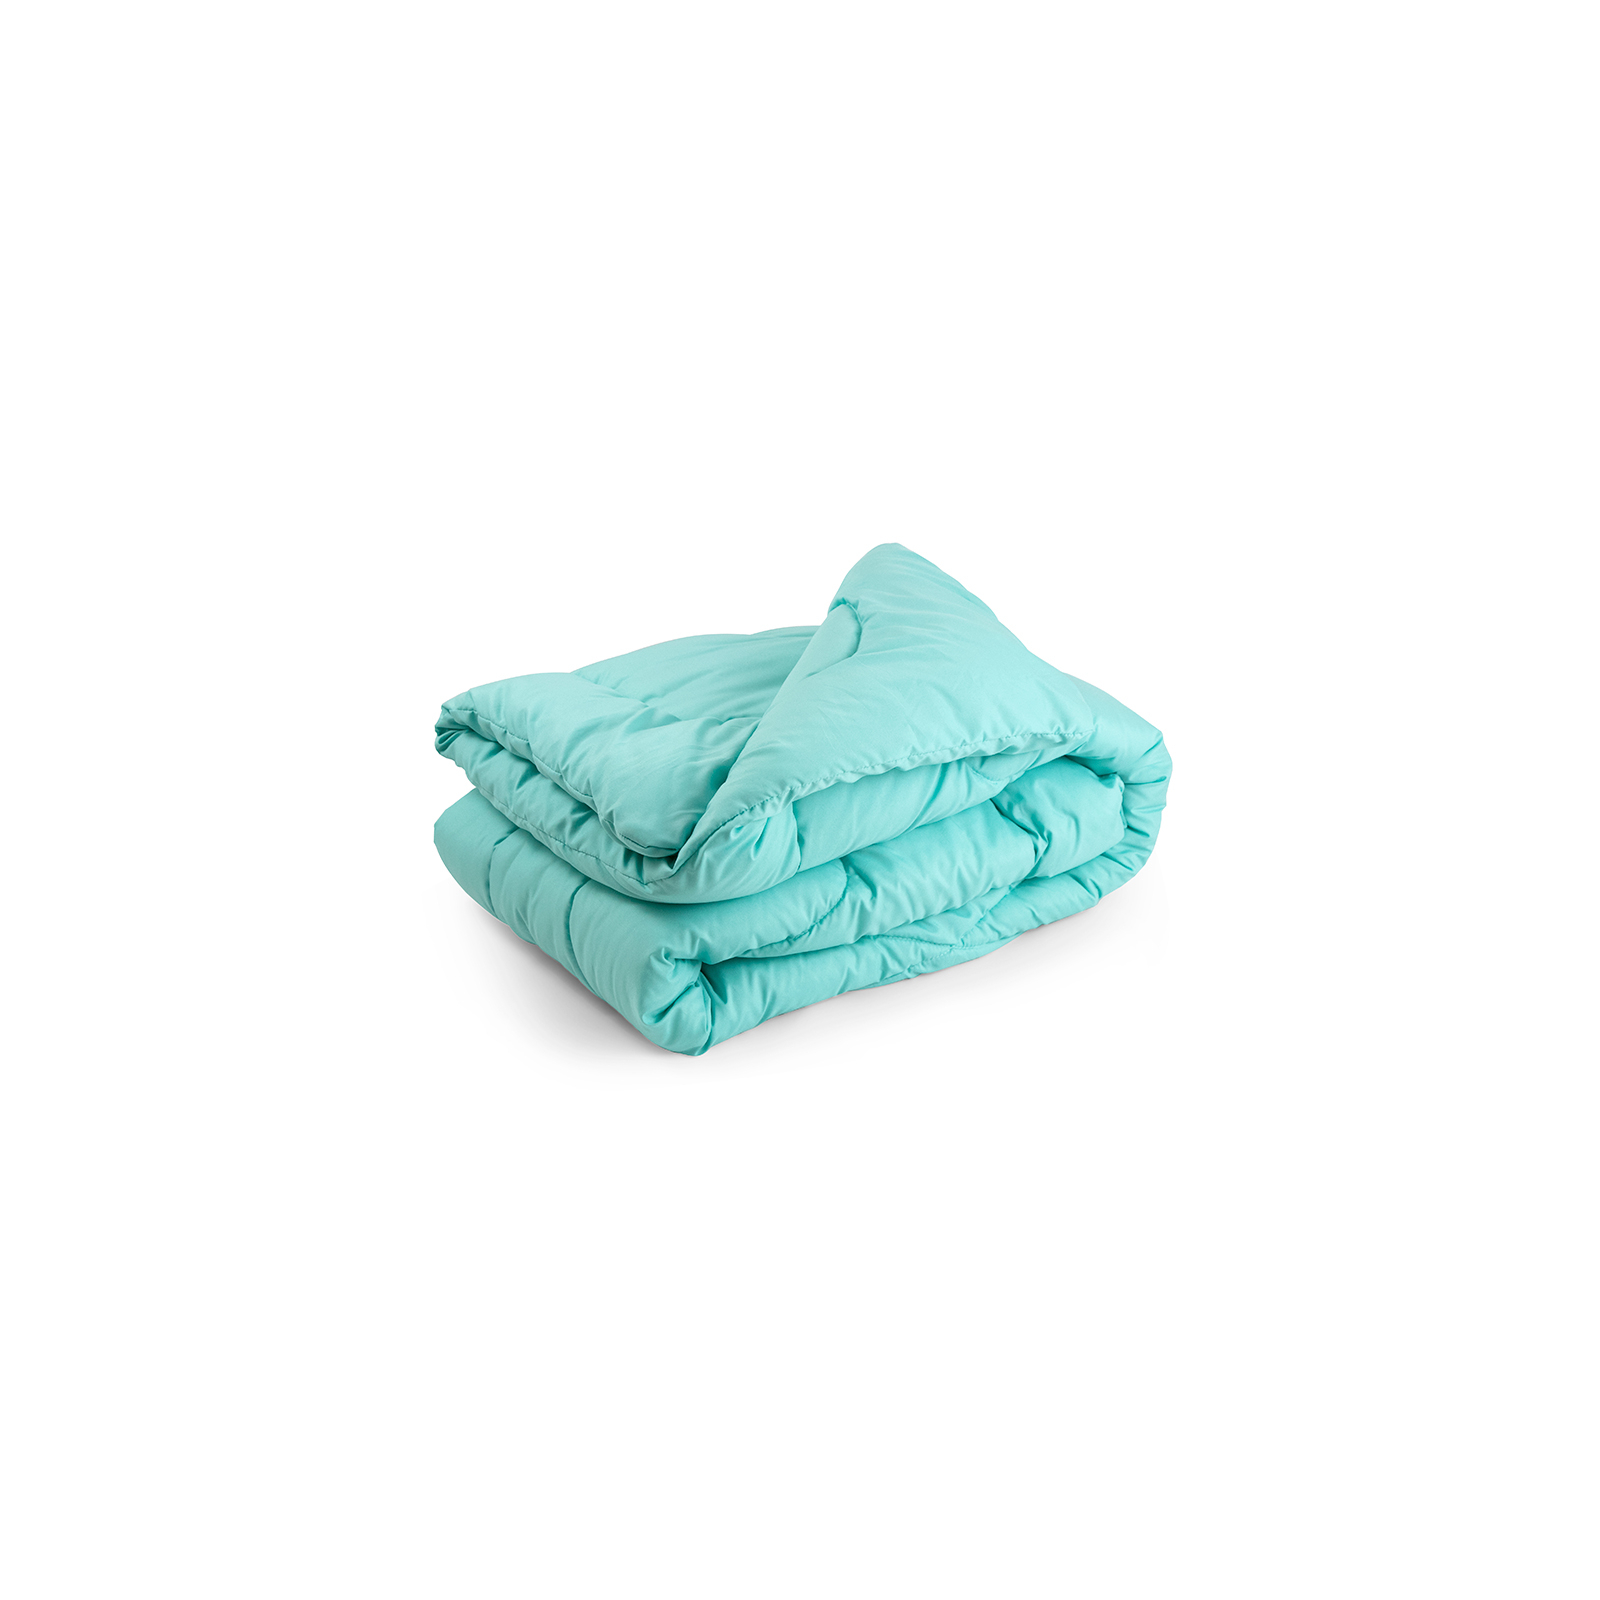 Одеяло Руно всесезонная силиконовая Ментоловая 140х205 см (321.52СЛБ_Ментоловий)